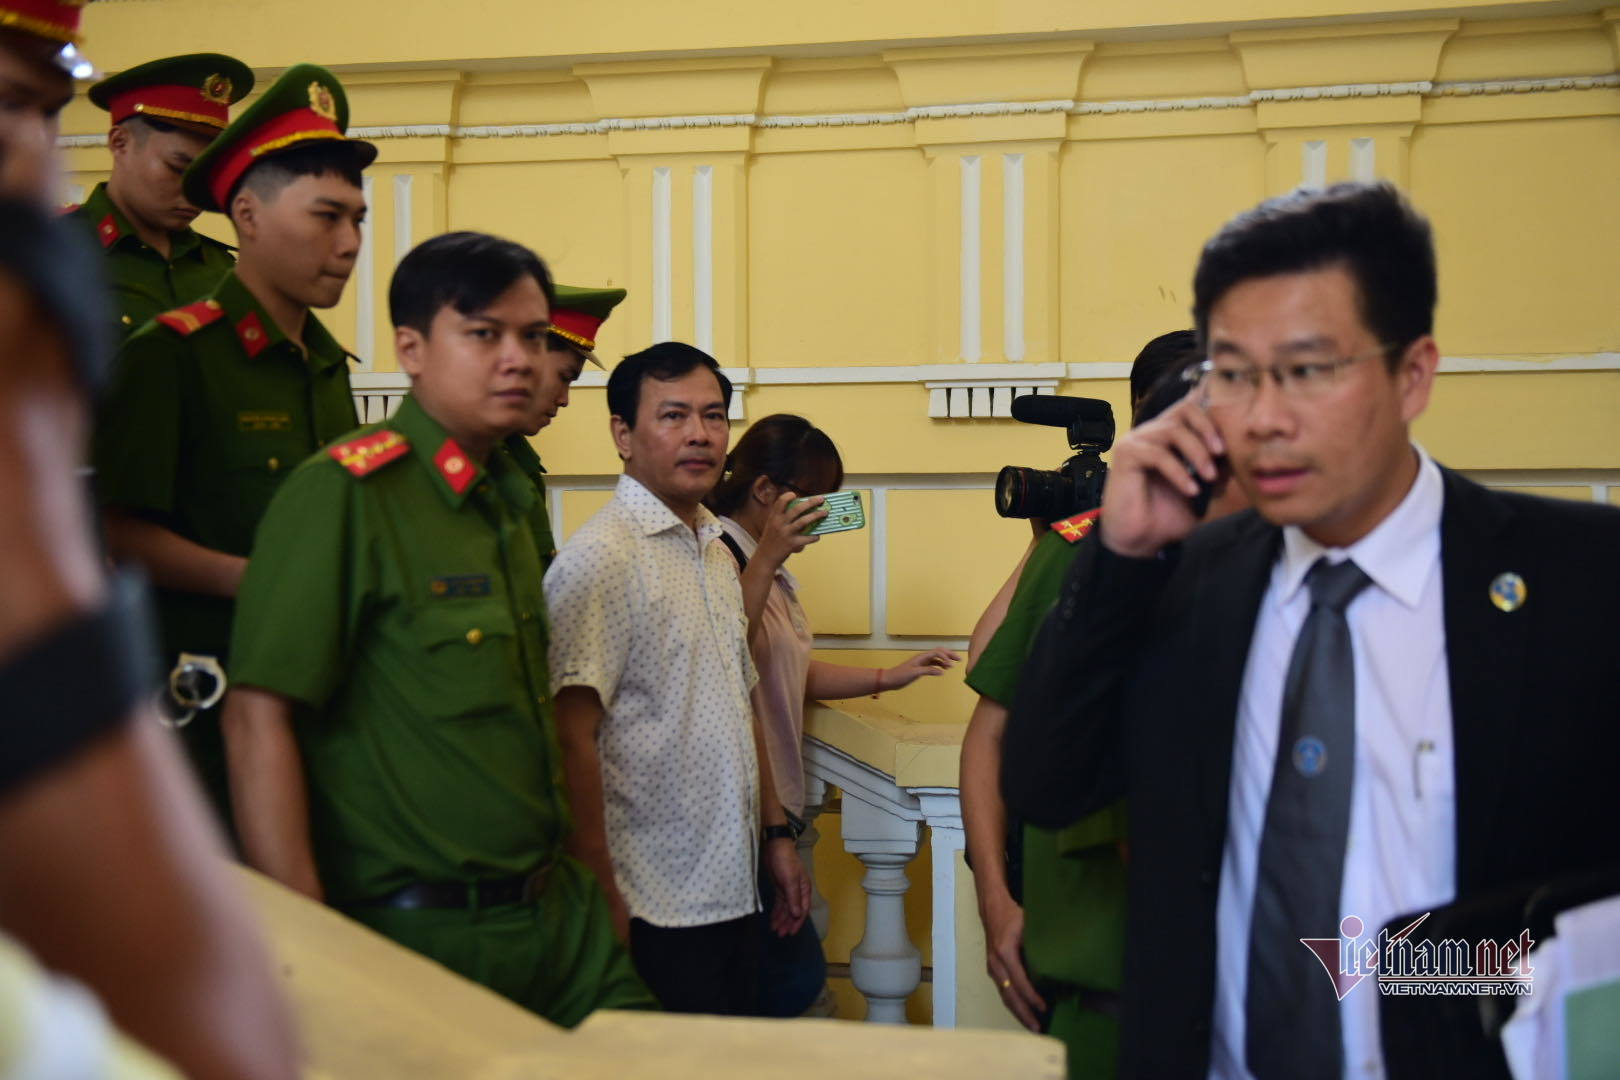 Bị y án 18 tháng tù, Nguyễn Hữu Linh mất bình tĩnh